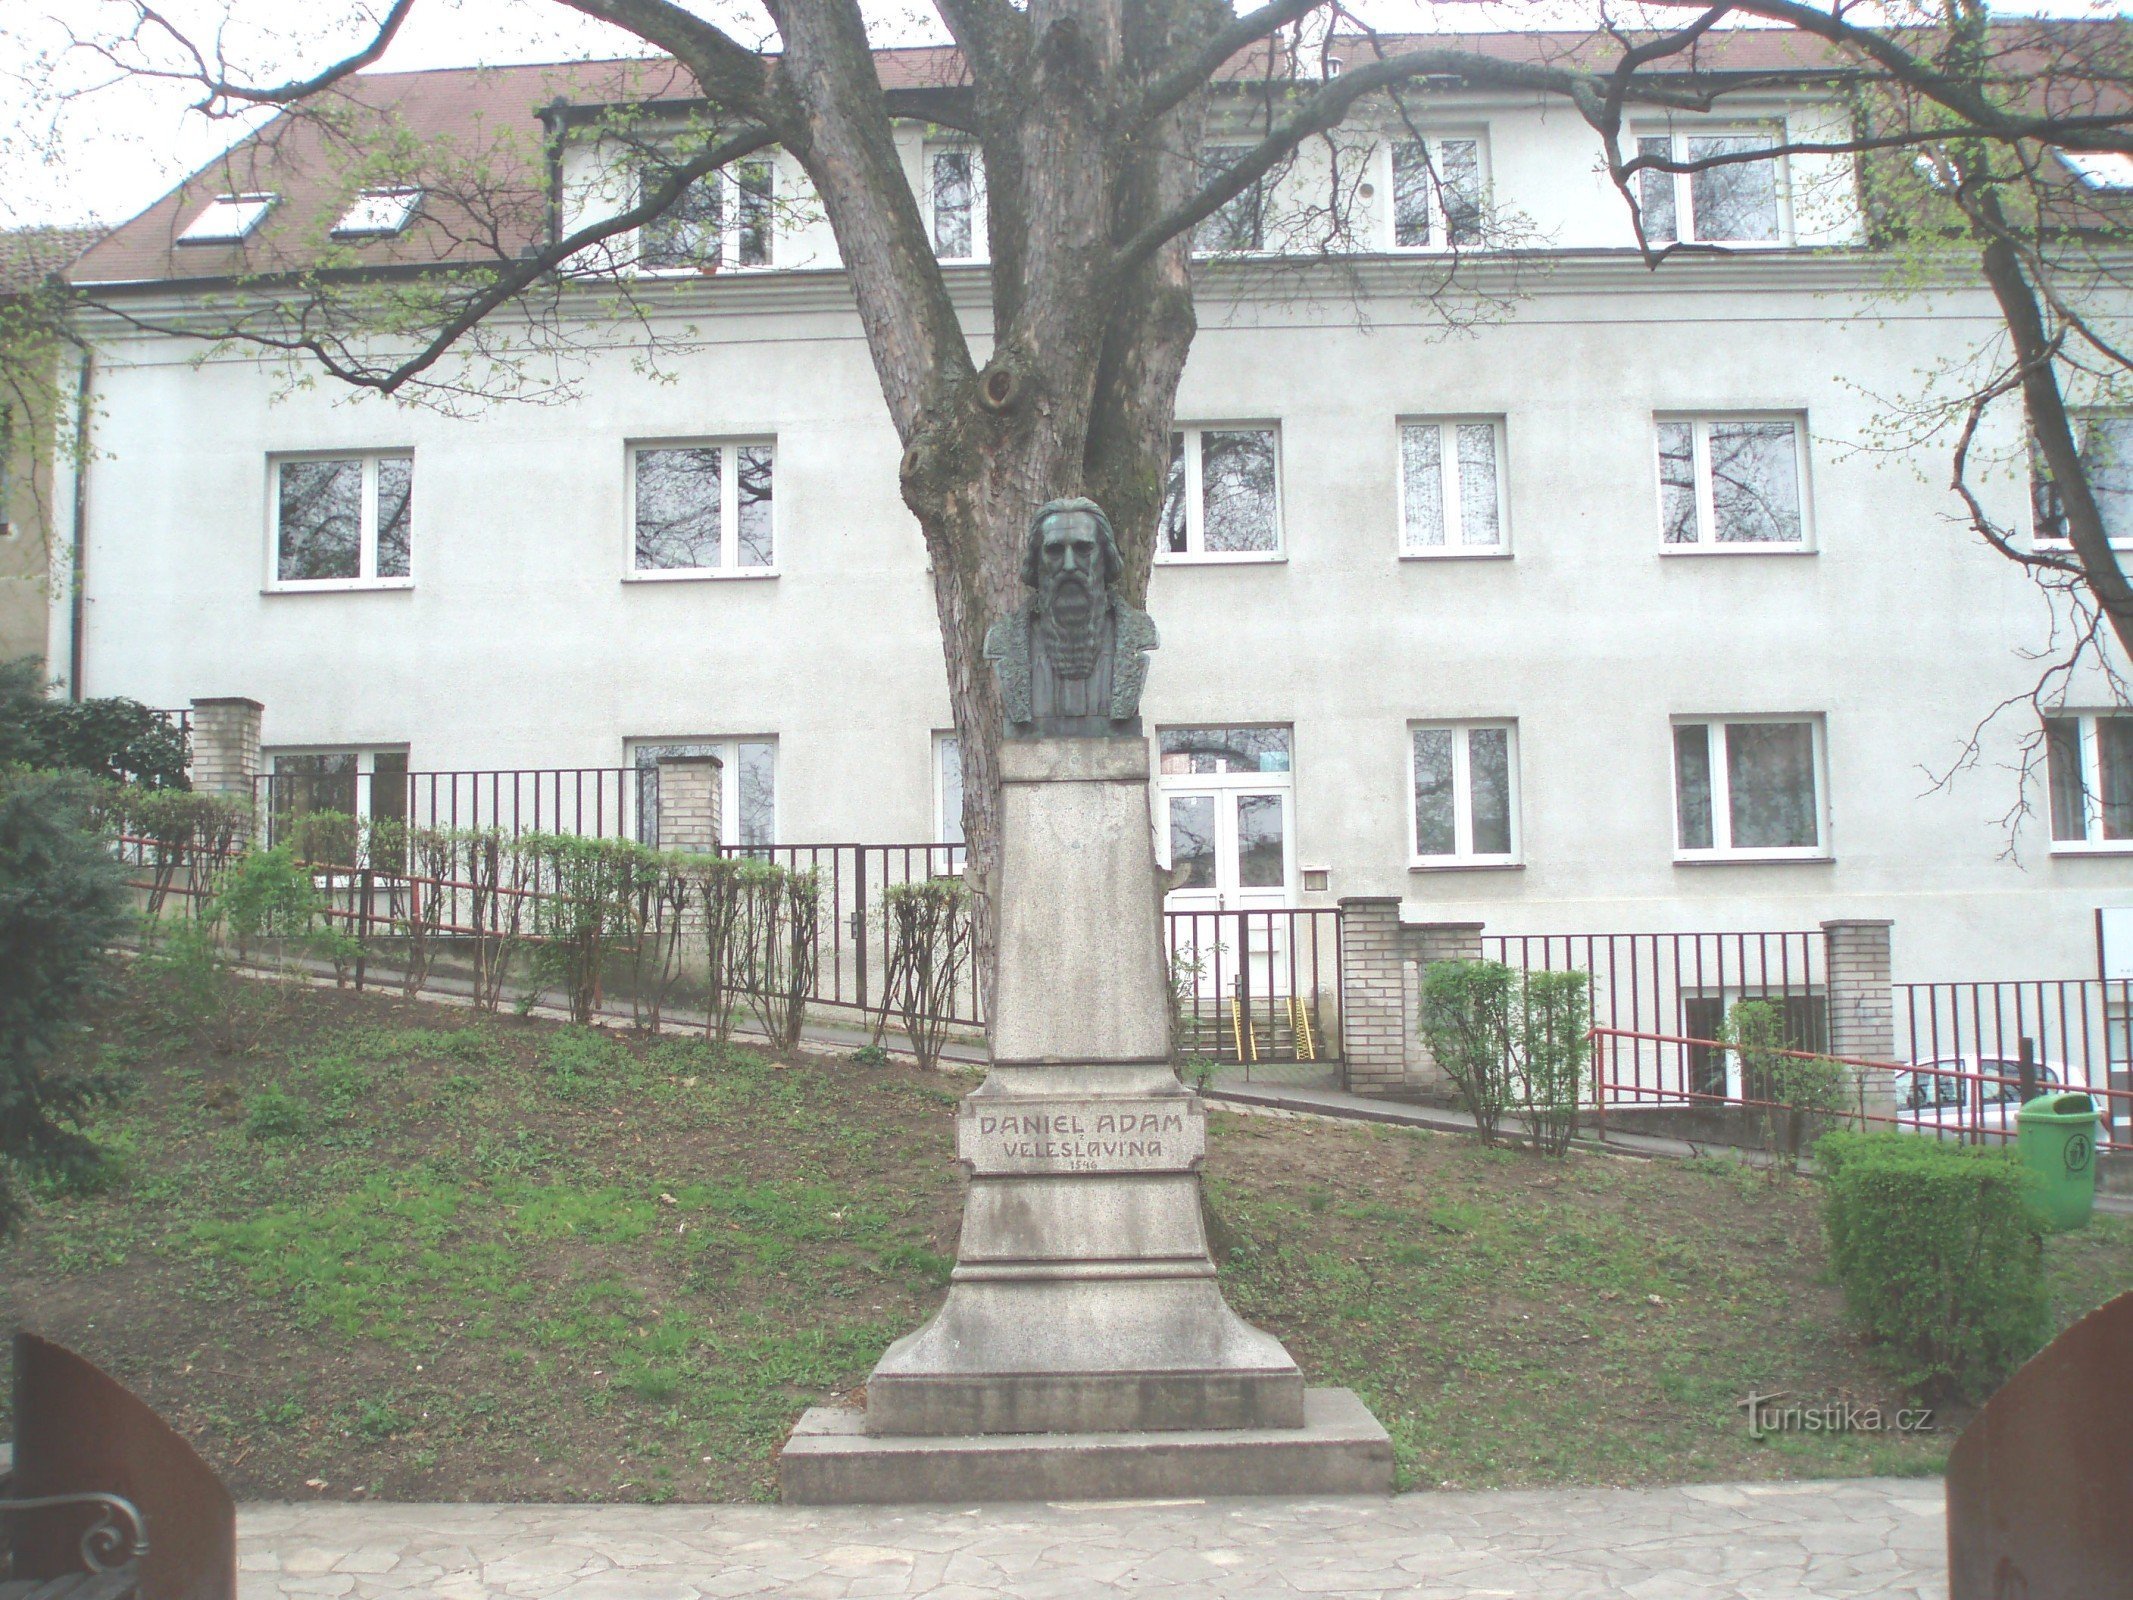 Pomnik Daniela Adama z Veleslavín